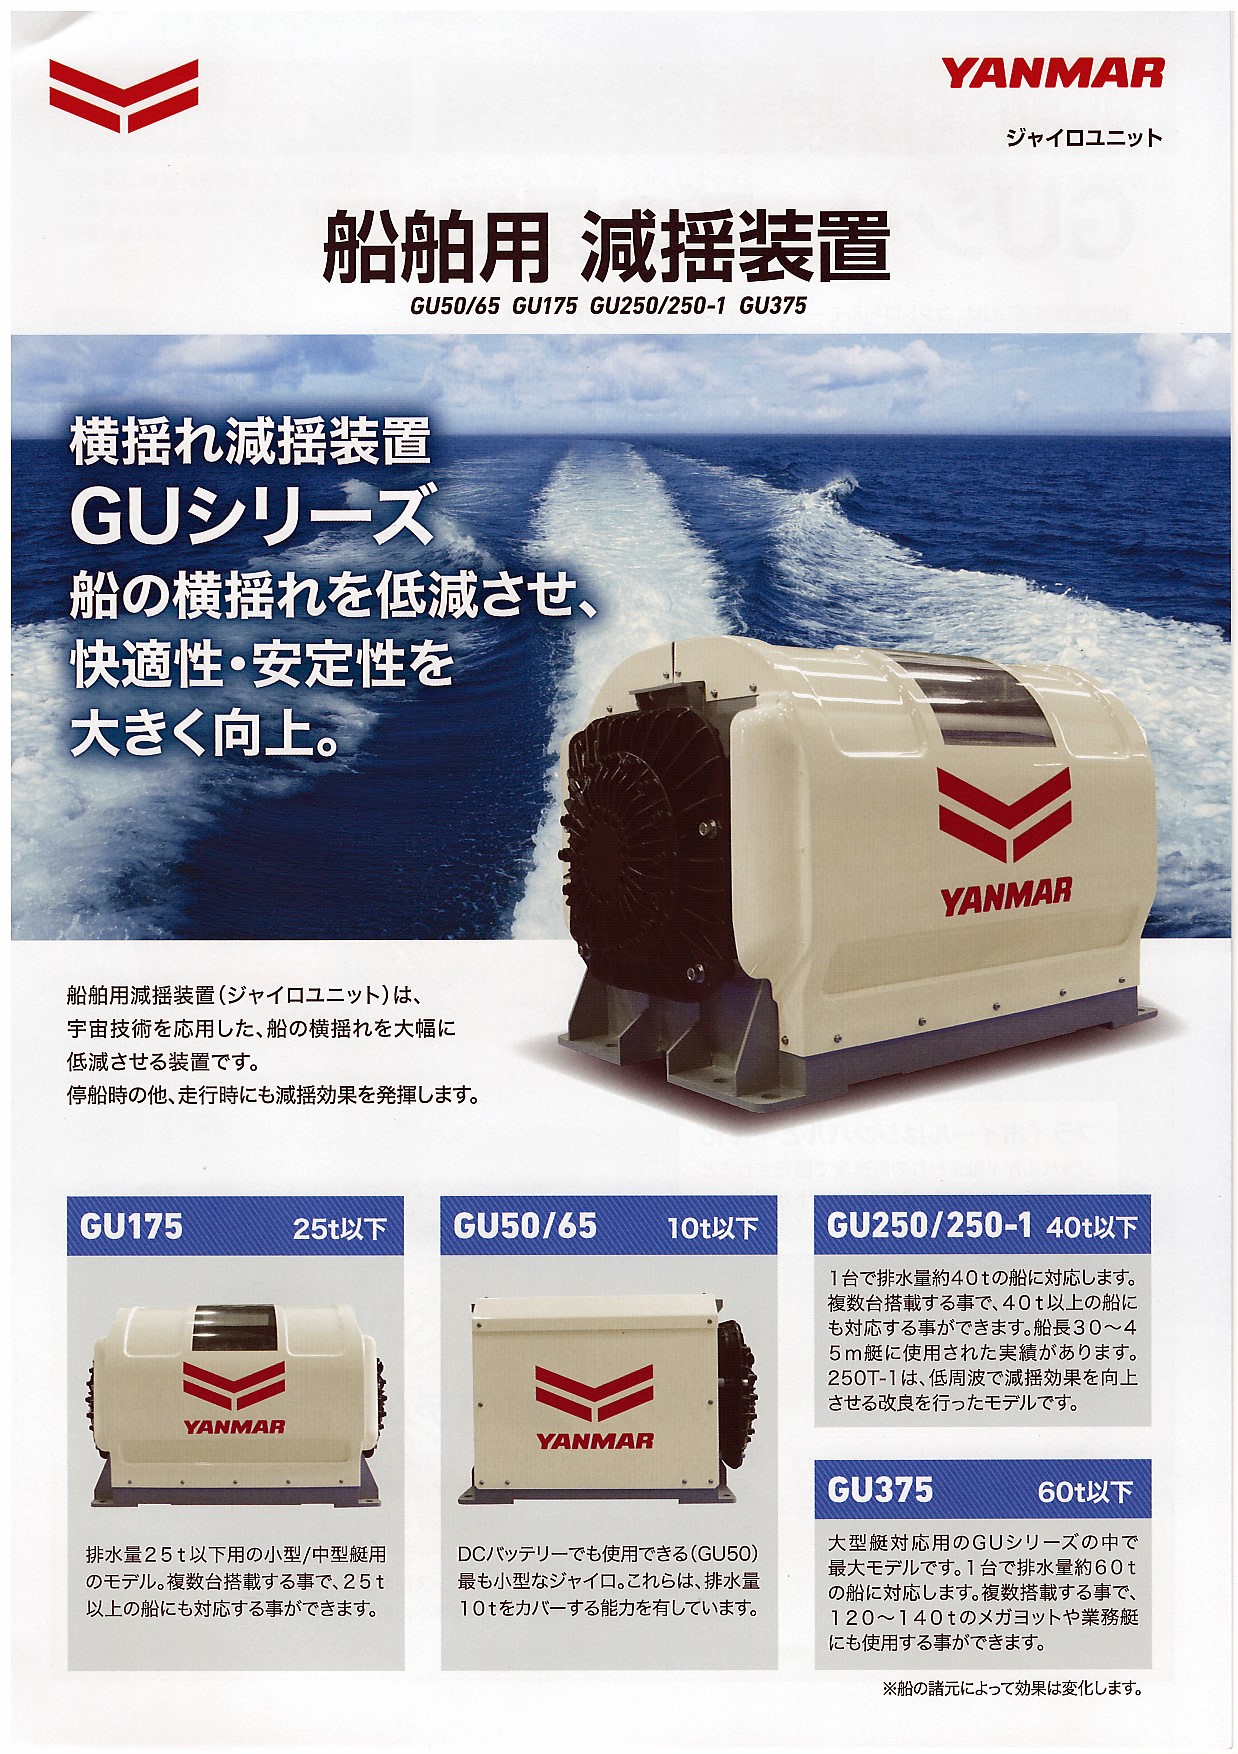 船舶用 減揺装置 ジャイロユニット GU50/60・GU175・GU250/250-1・GU375/ヤンマー特約店 齊敏機械